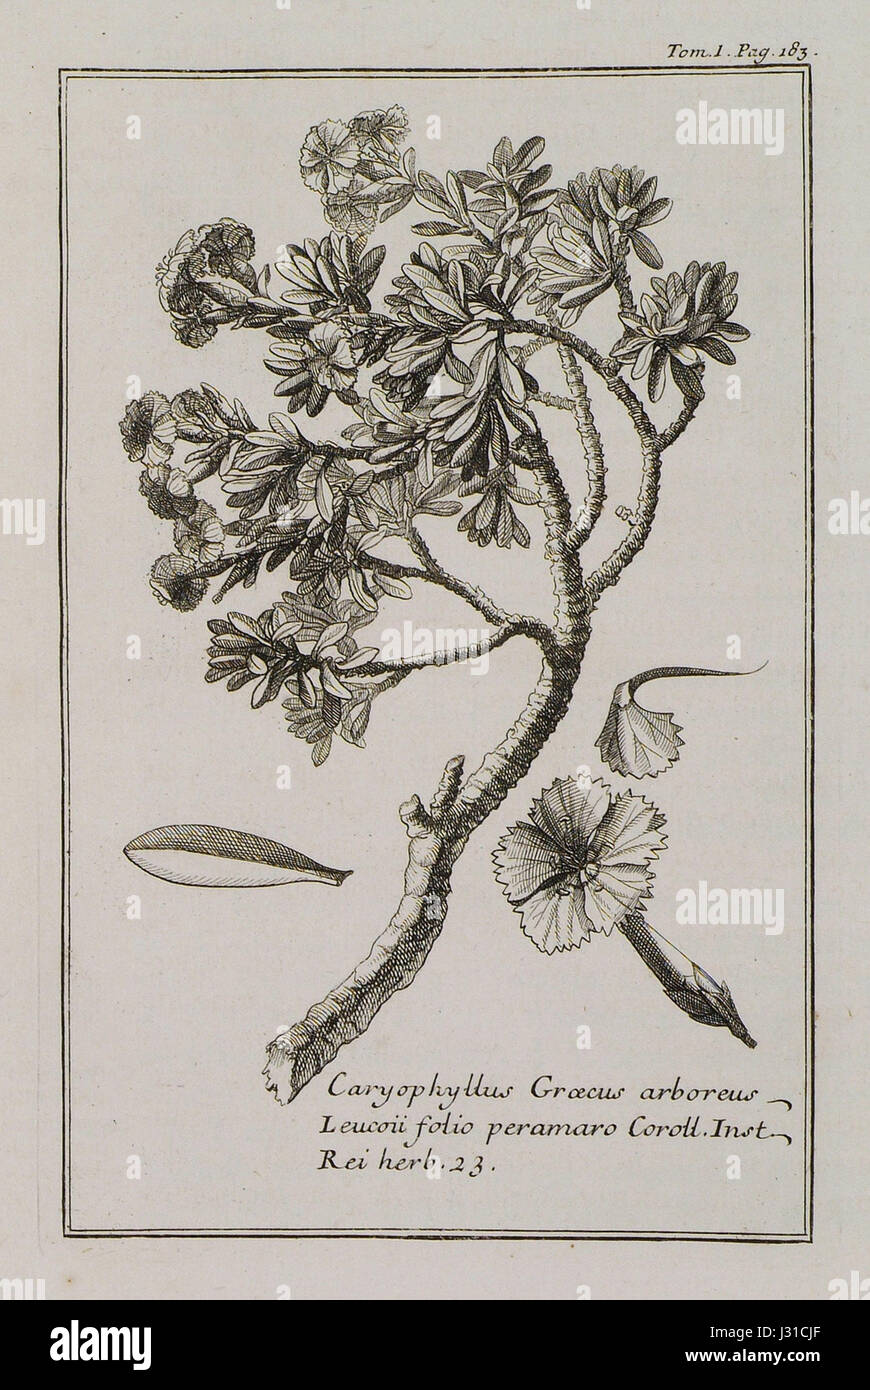 Caryophyllus Graecus arboreus Leucoii folio peramaro Coroll Inst Rei herb 23 - Tournefort Joseph Pitton De - 1717 Stock Photo